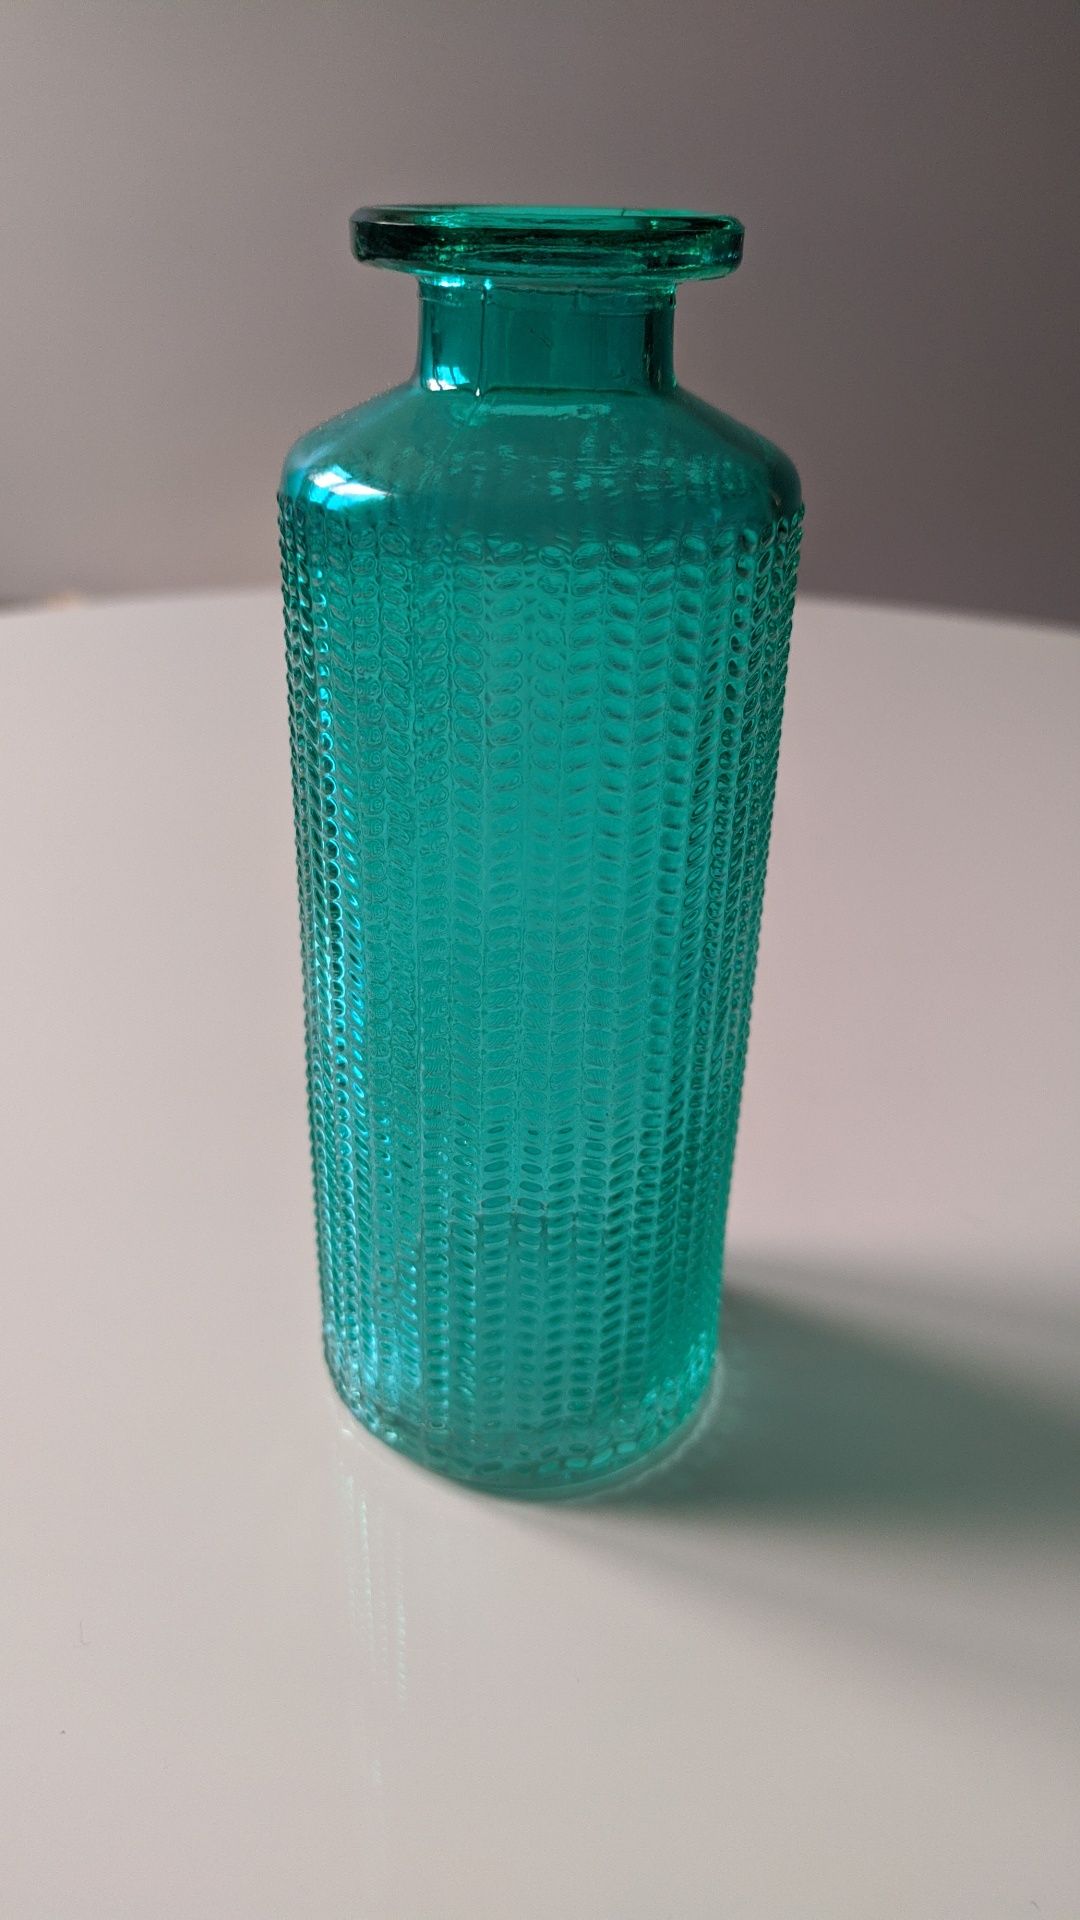 Szklany mały wazonik 13 cm turkus odcienie niebieskiego